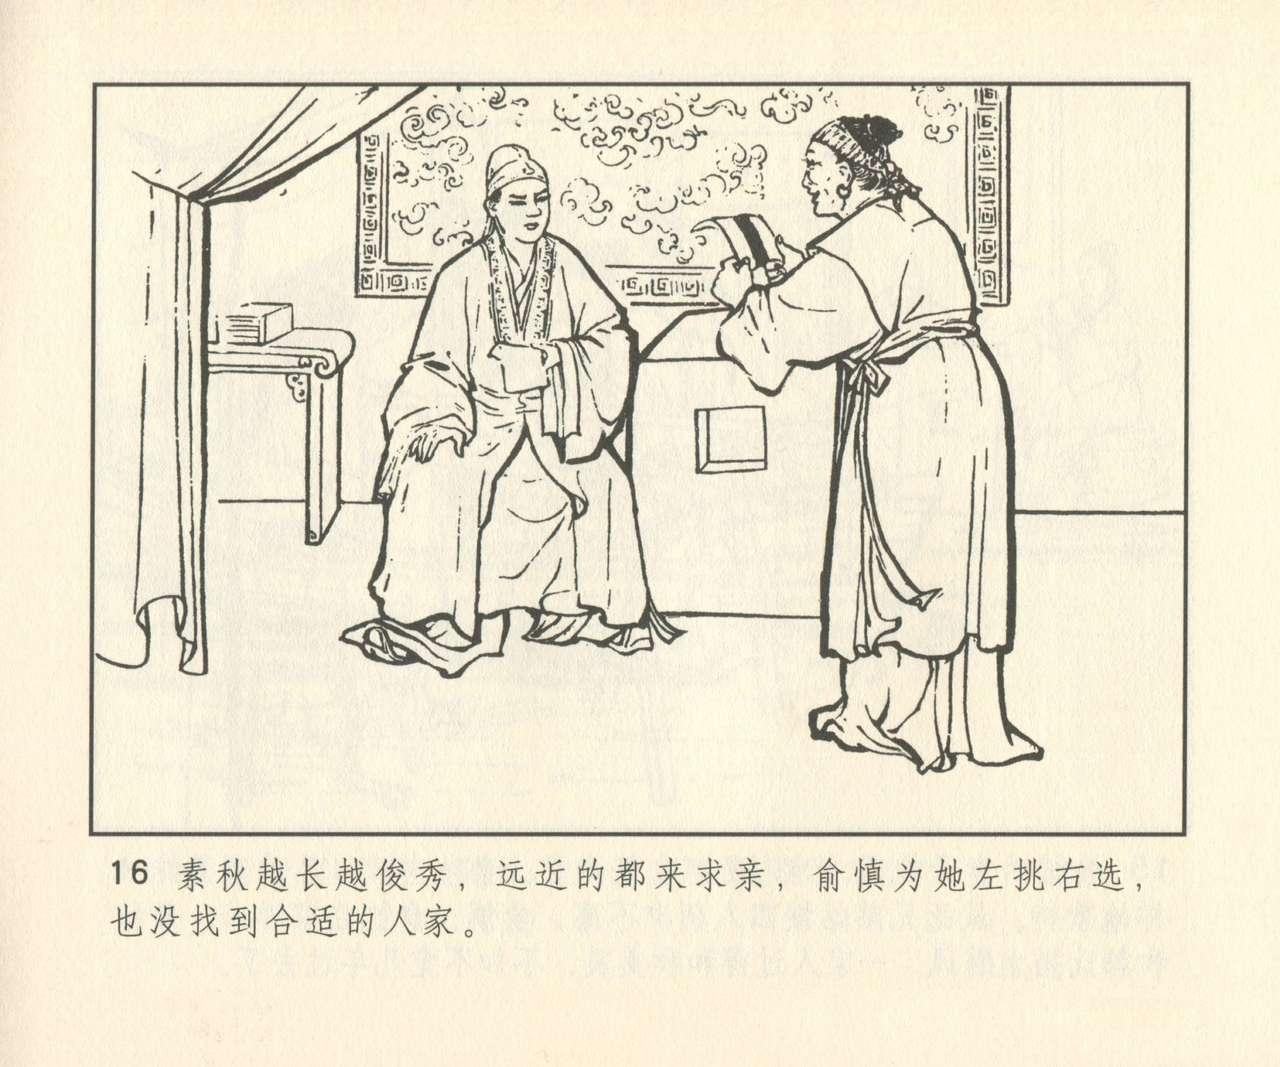 聊斋志异 张玮等绘 天津人民美术出版社 卷二十一 ~ 三十 296